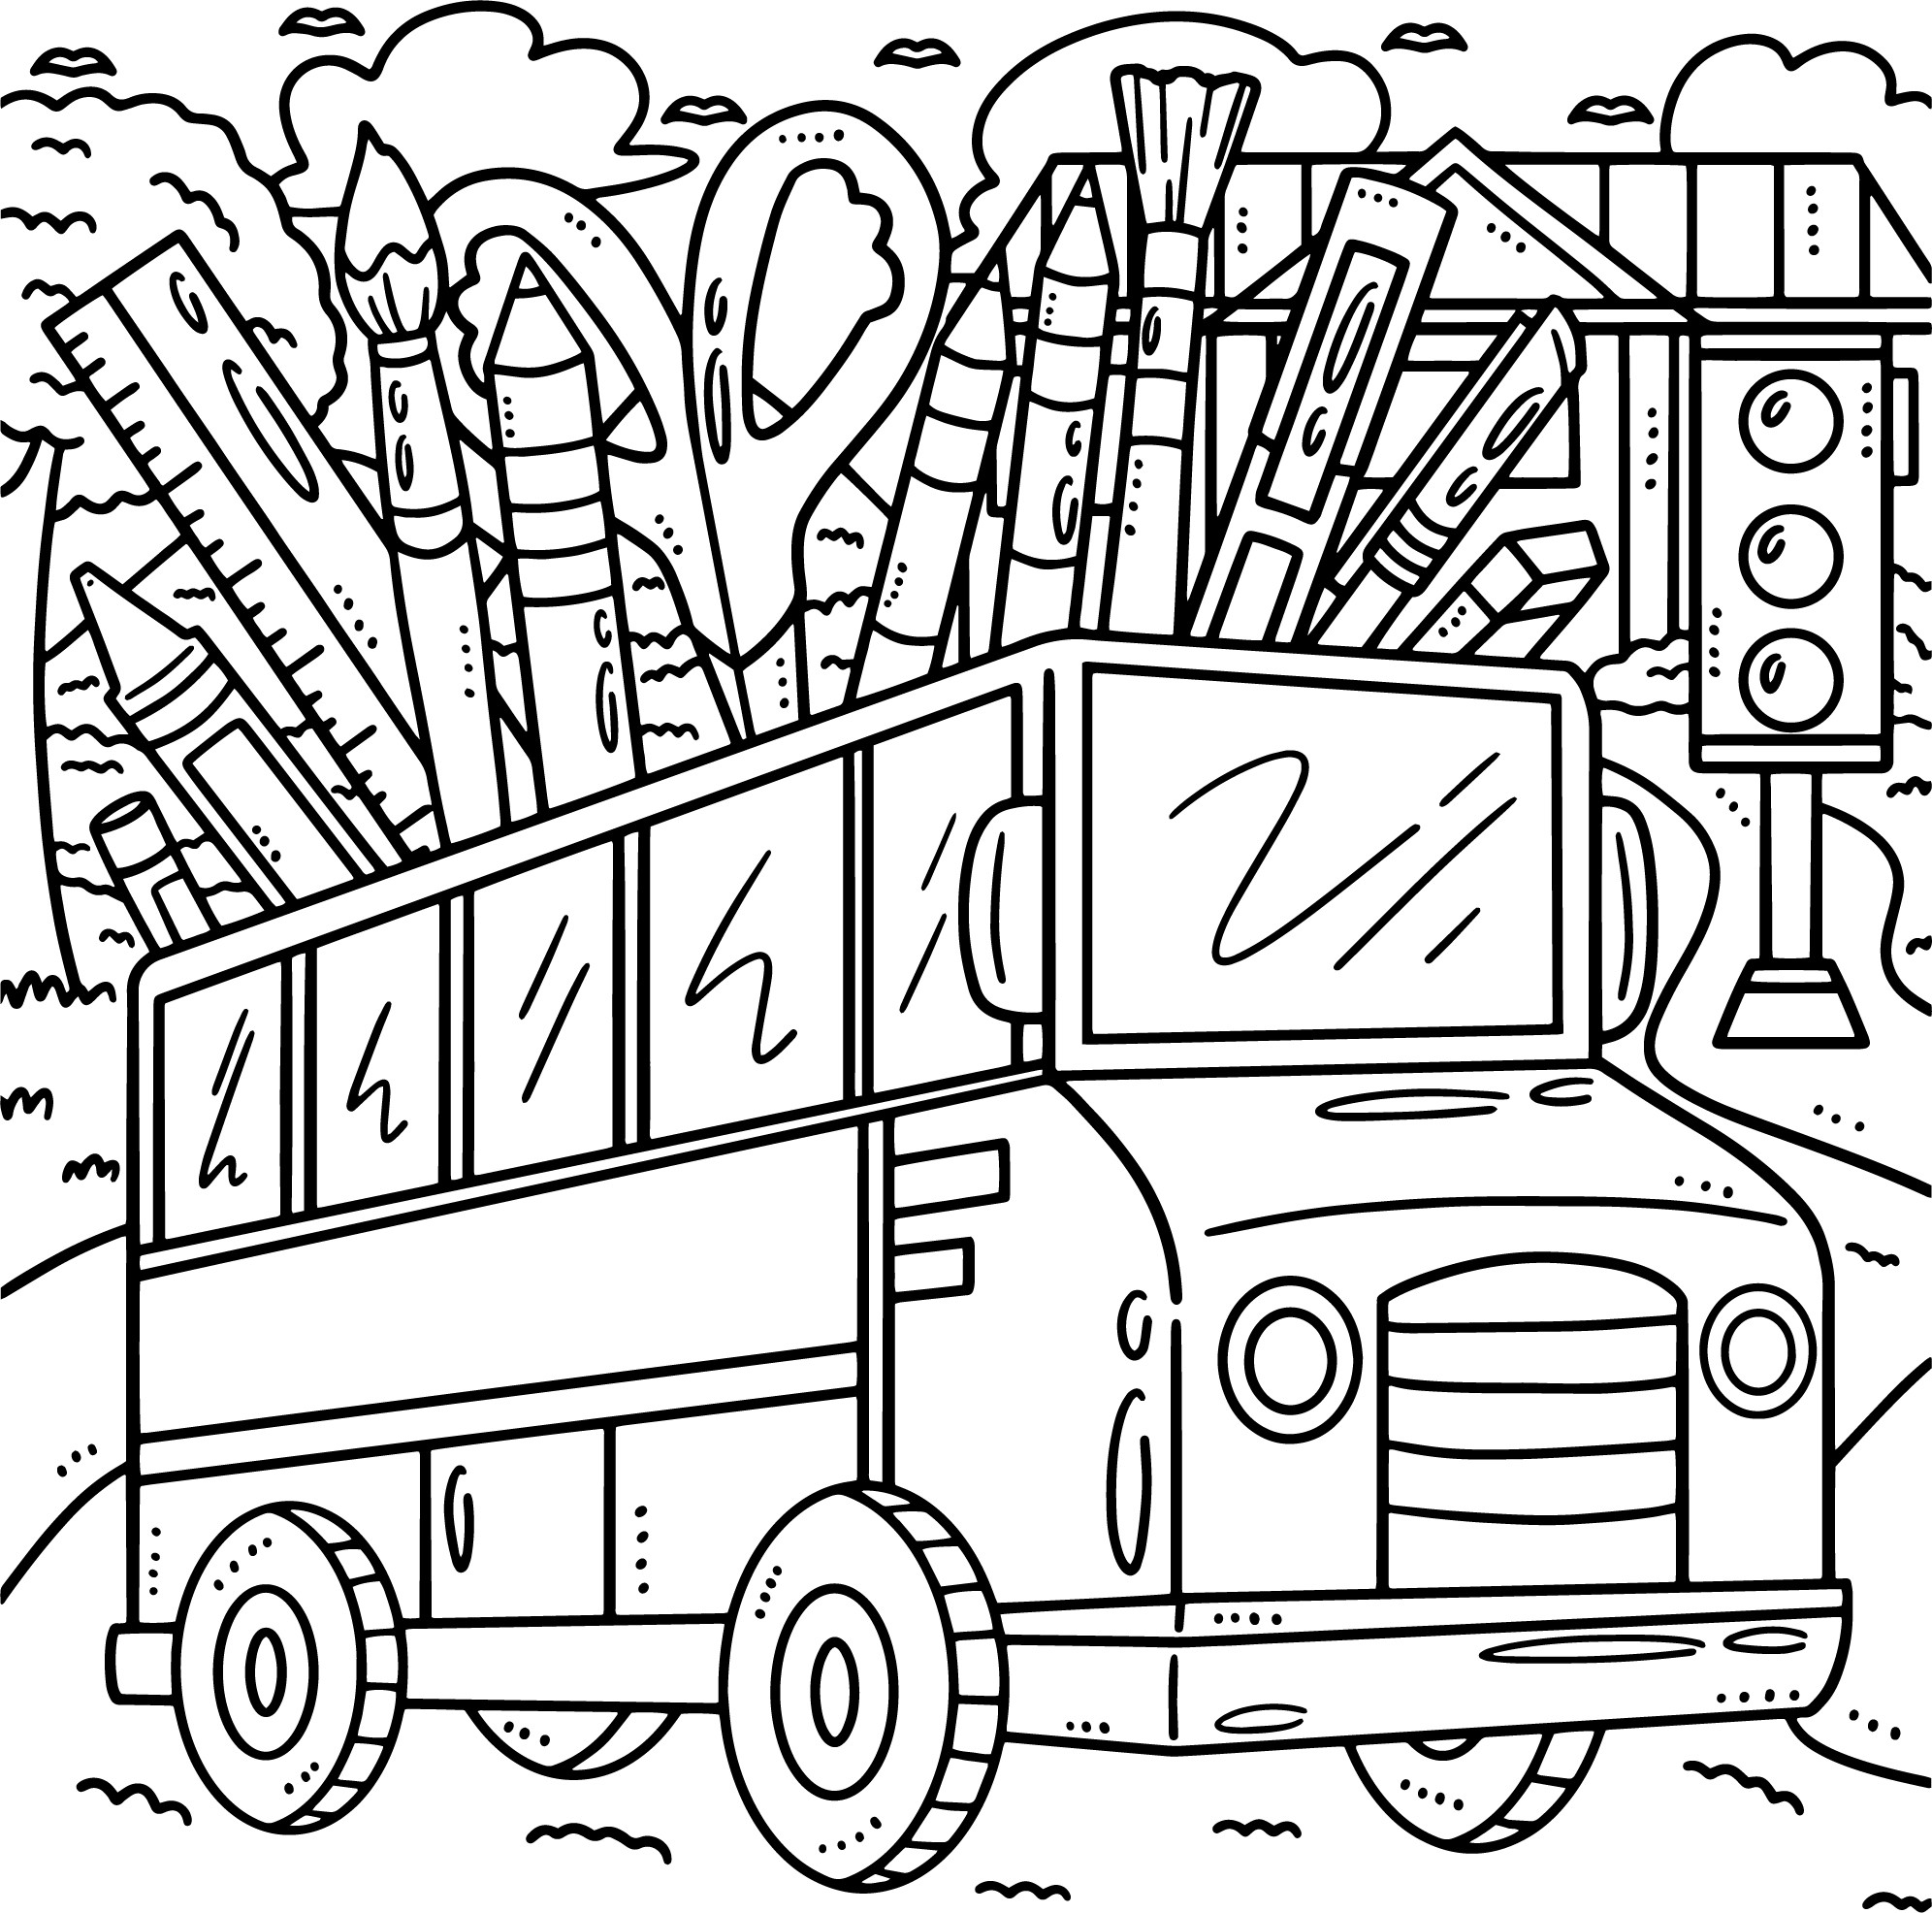 Раскраска для детей: мультяшный школьный автобус с карандашами и кисточками